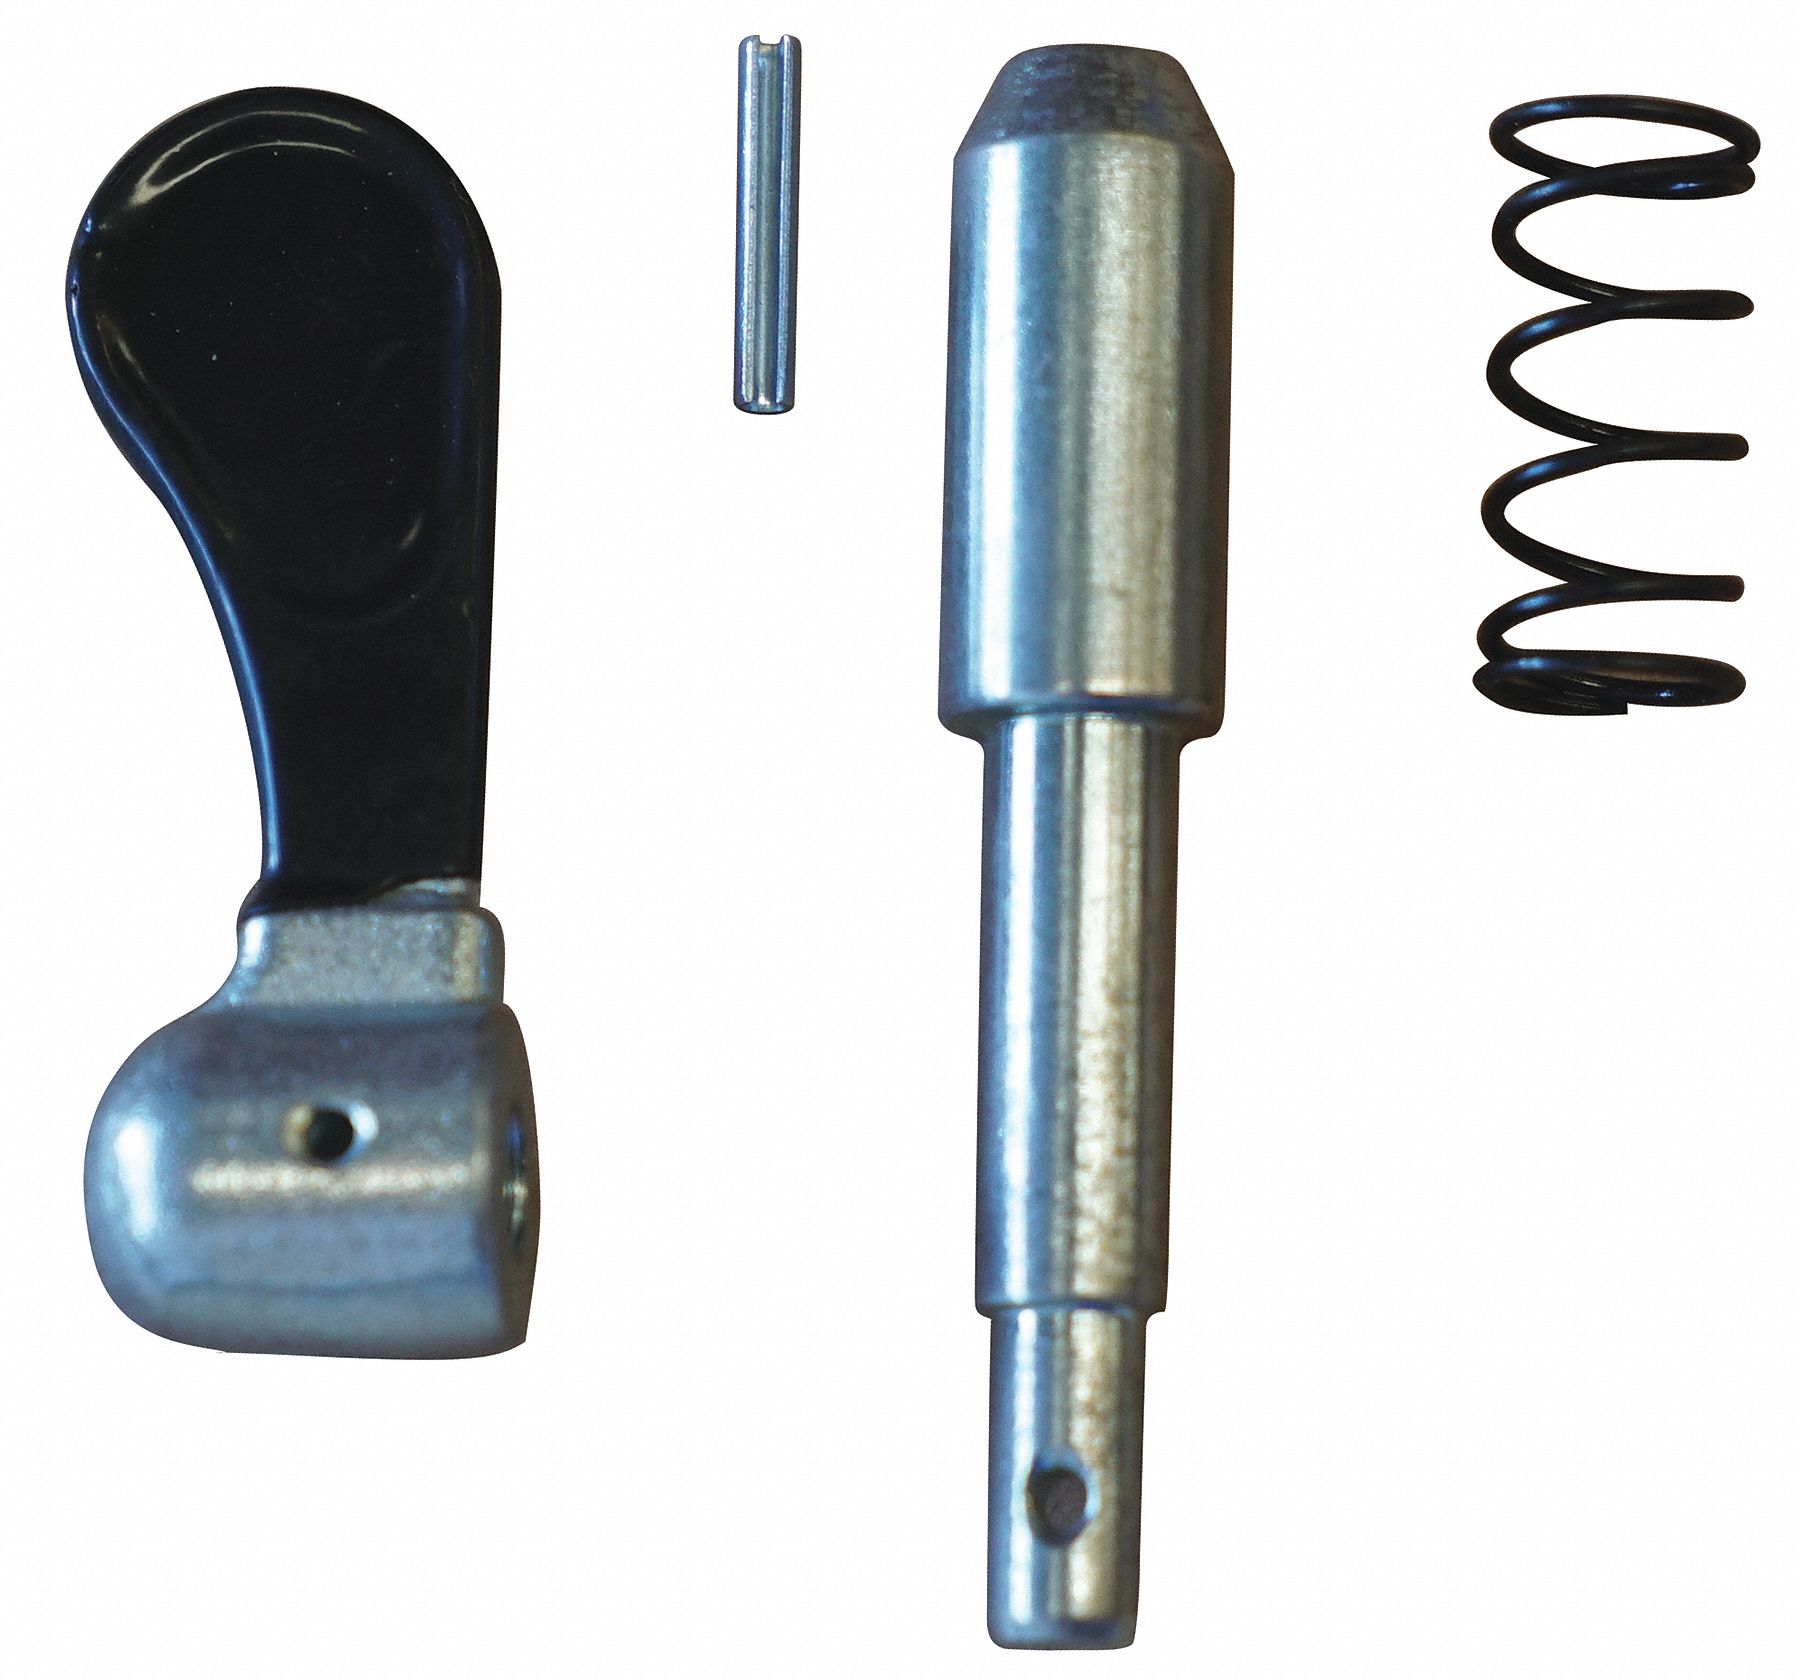 DAYTON Locking Pin Kit: For 493X19, Fits Dayton Brand